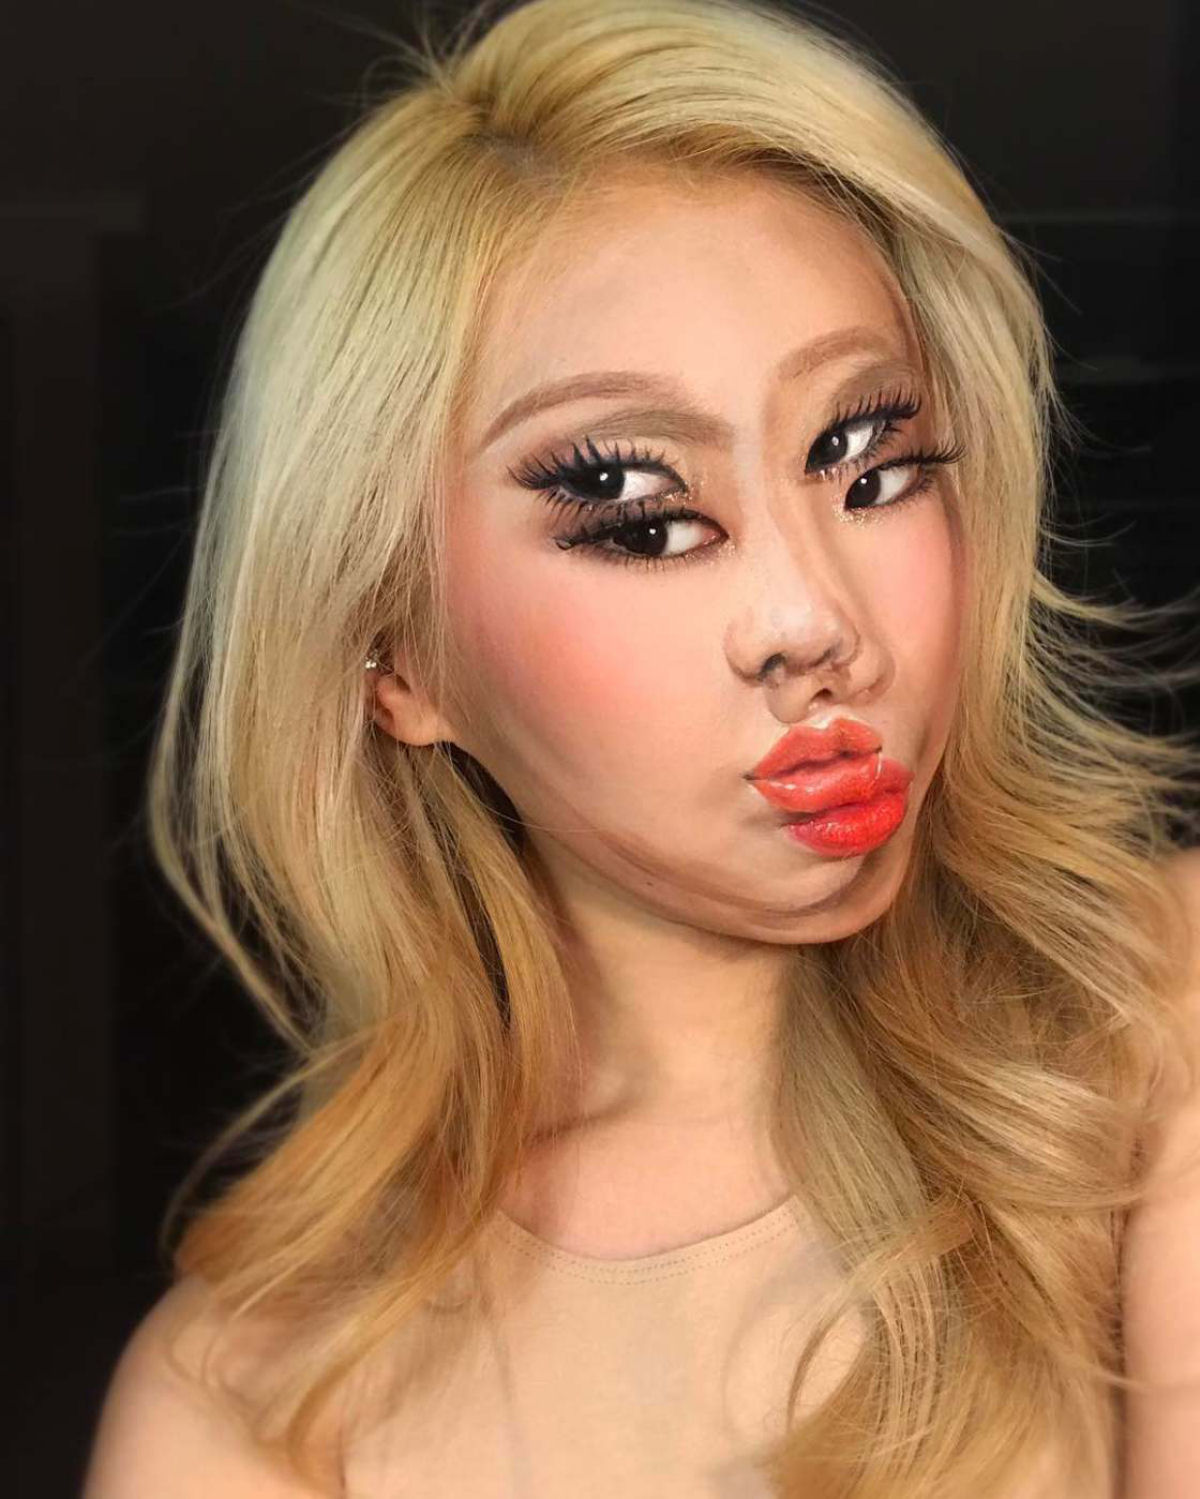 Artista sul-coreana usa maquiagem para transformar sua face em iluses pticas fascinantes 08